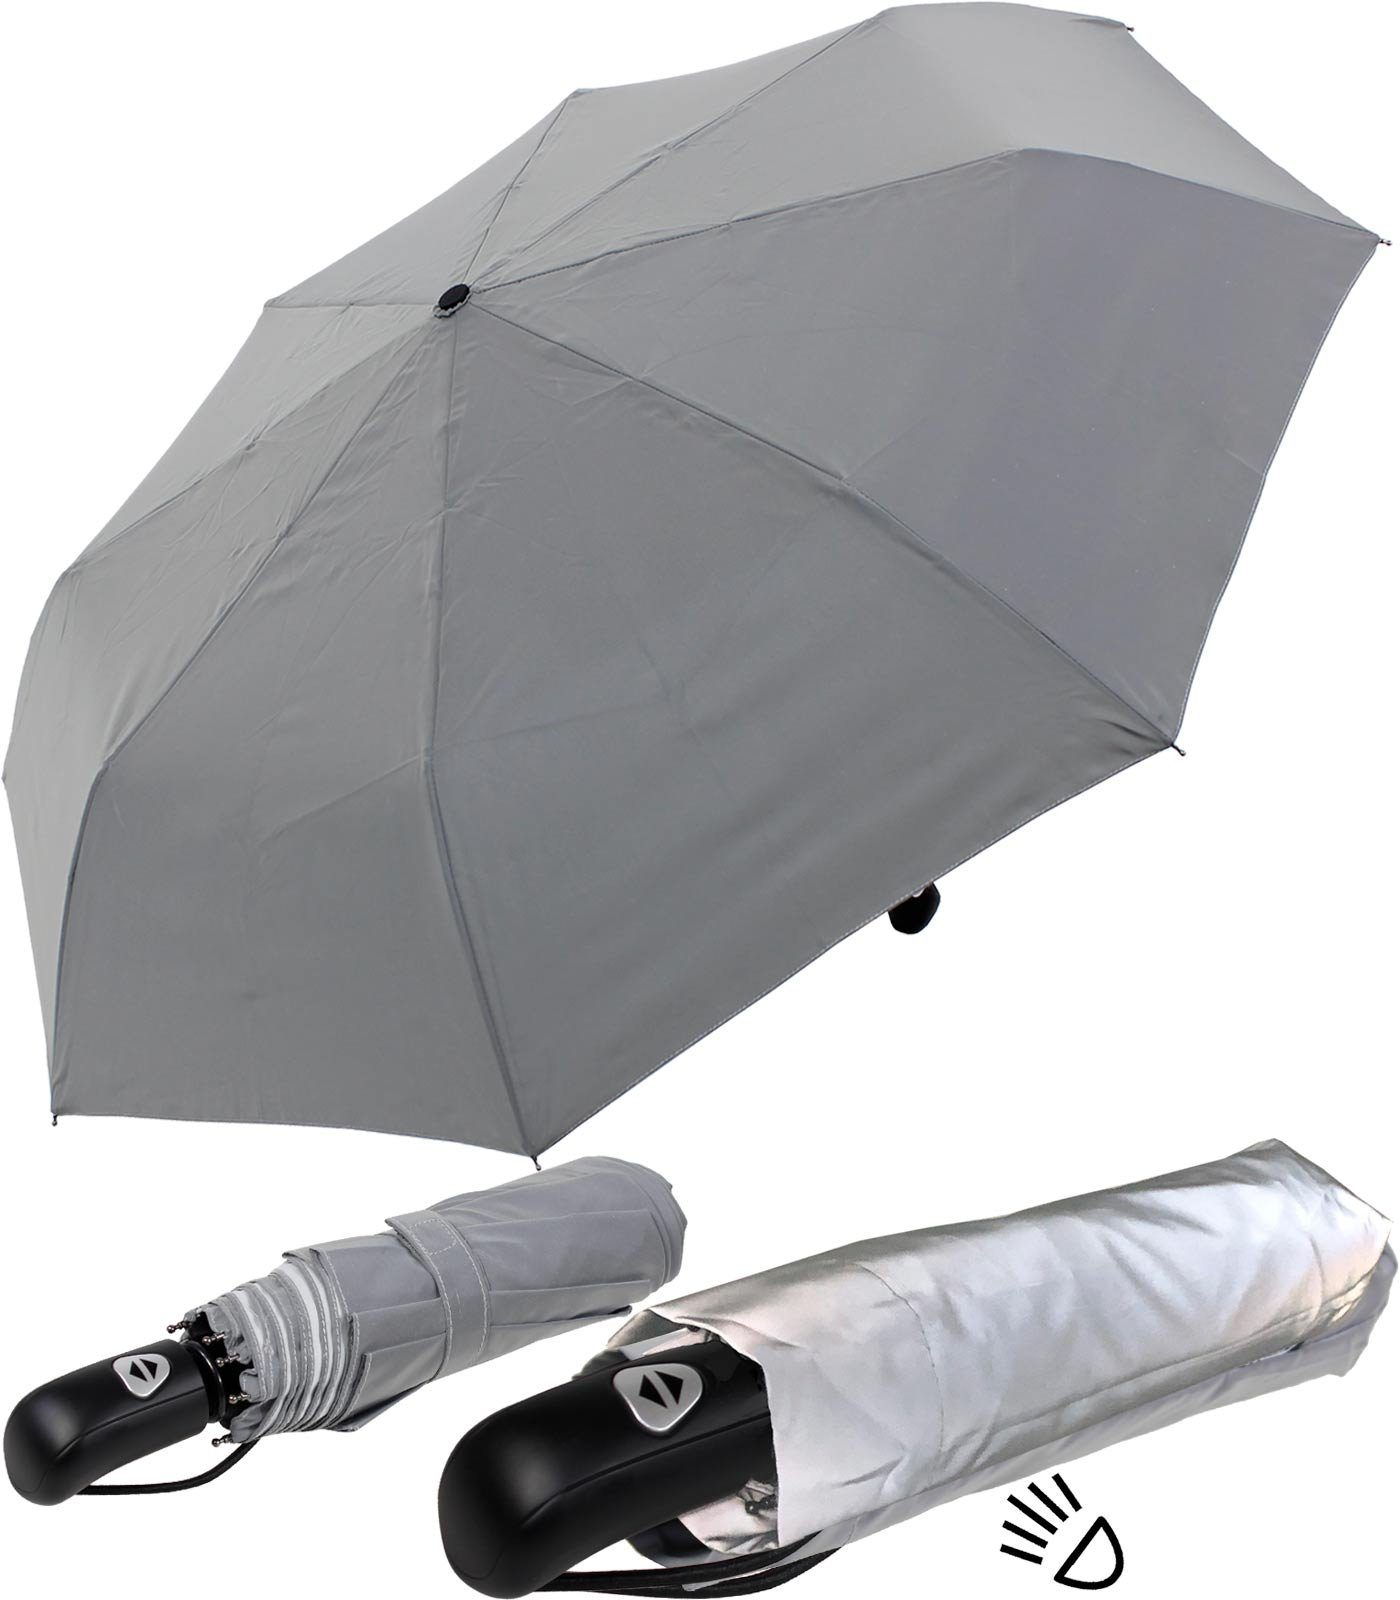 iX-brella Taschenregenschirm First Class stabiler Regenschirm mit Automatik, das ganze Dach besteht aus einem stark reflektierenden Material